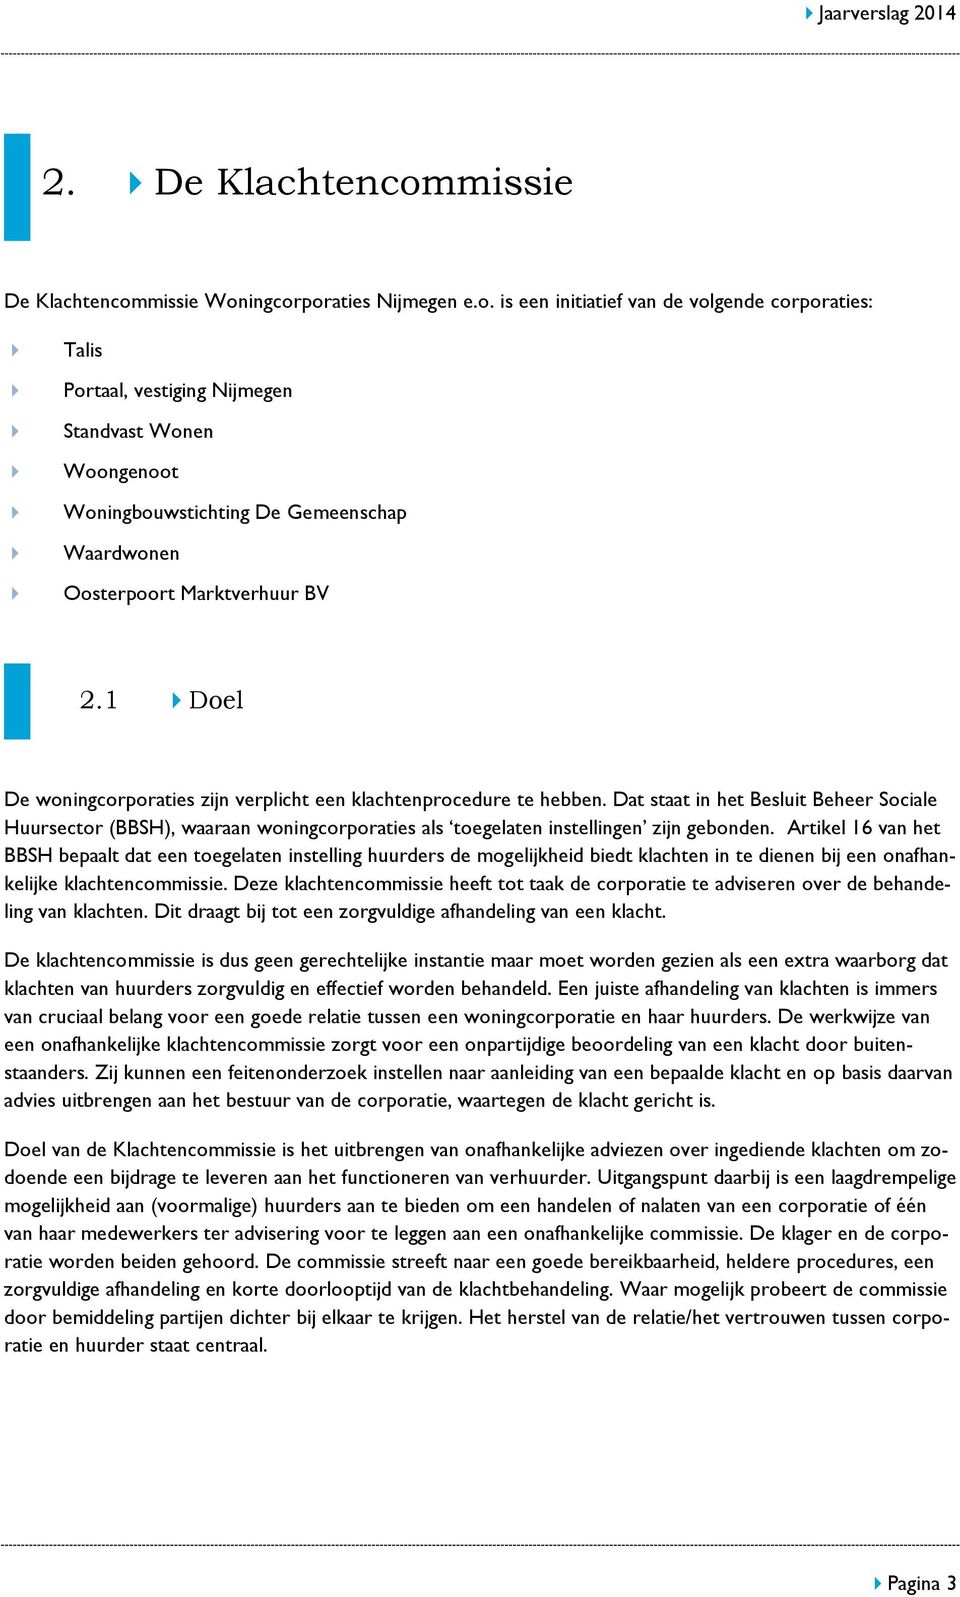 missie Woningcorporaties Nijmegen e.o. is een initiatief van de volgende corporaties: Talis Portaal, vestiging Nijmegen Standvast Wonen Woongenoot Woningbouwstichting De Gemeenschap Waardwonen Oosterpoort Marktverhuur BV 2.